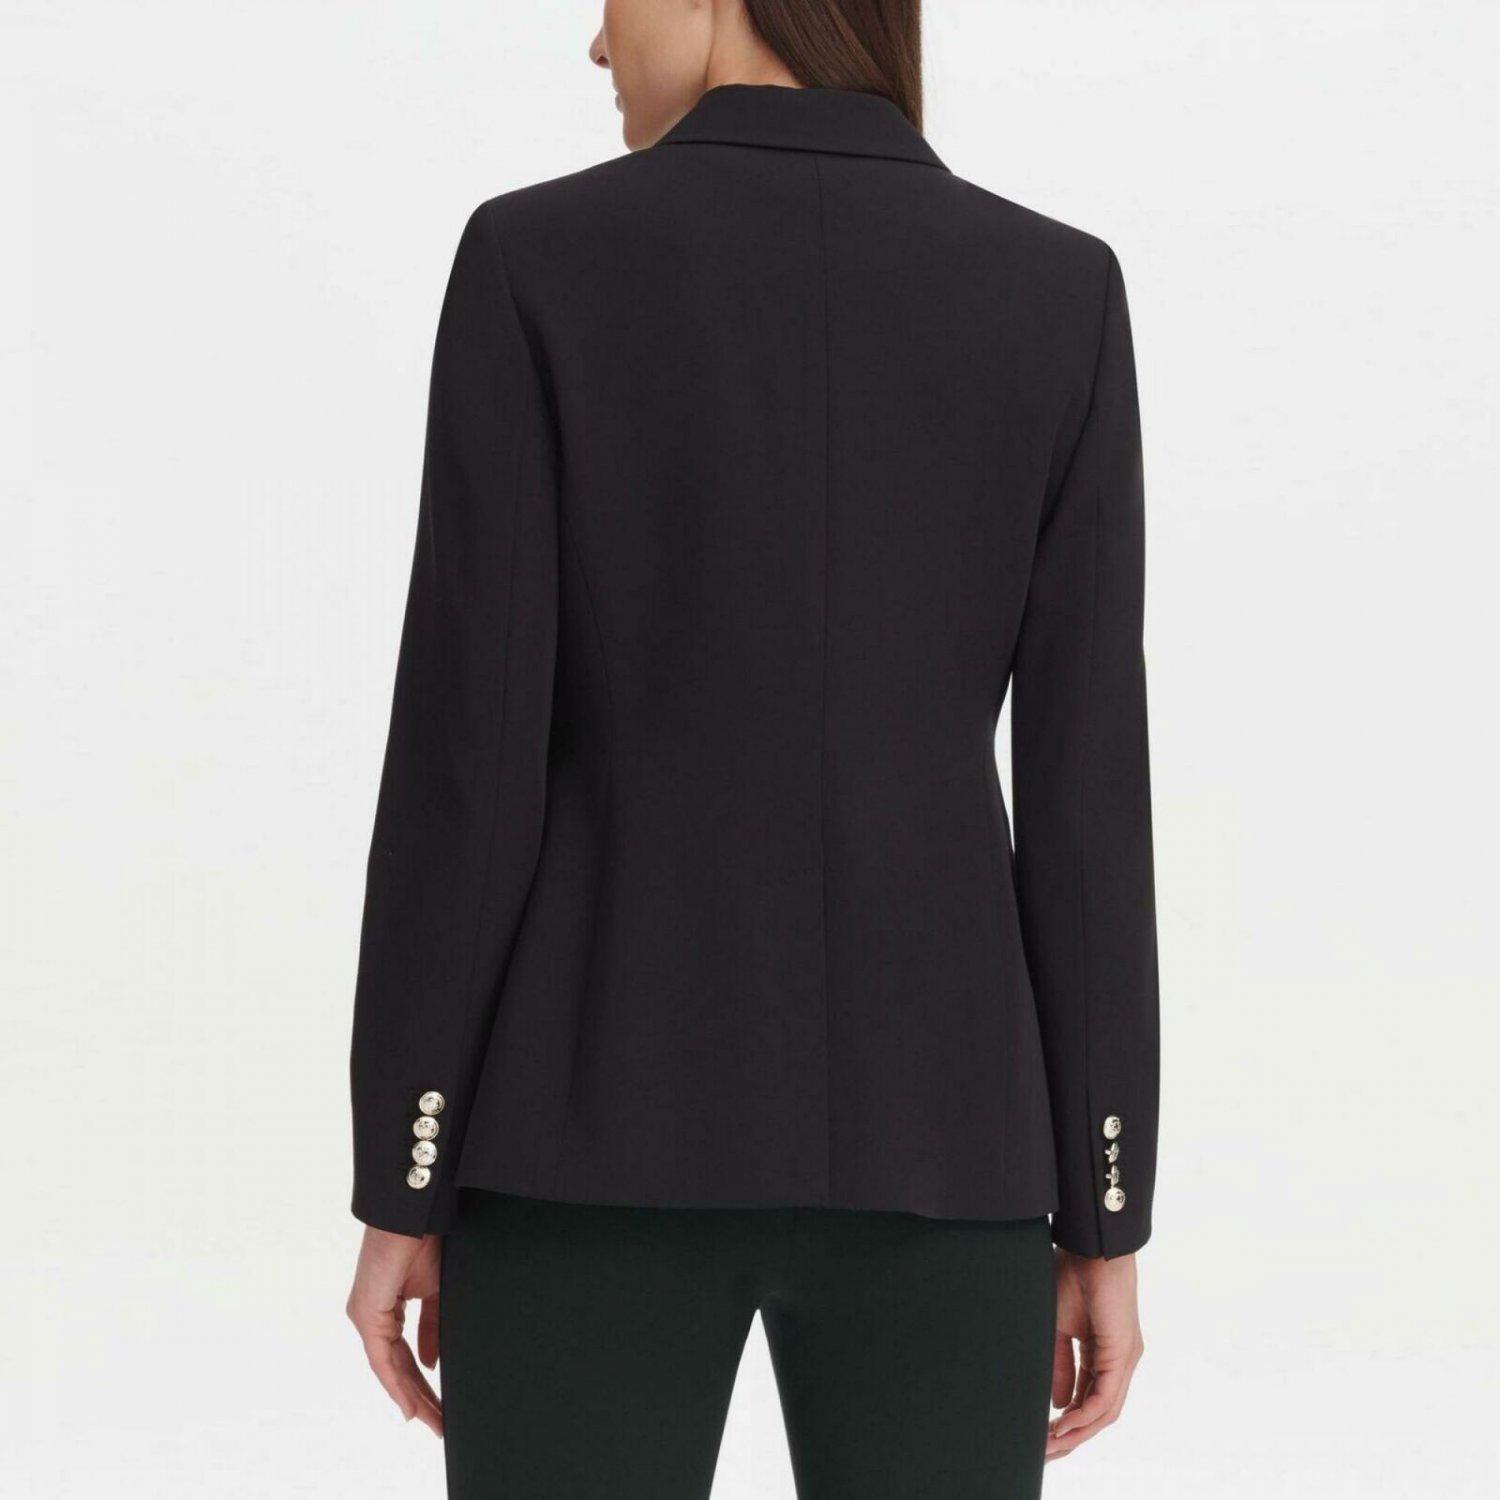 Tommy Hilfiger Women's One Button Blazer Jacket Black 4